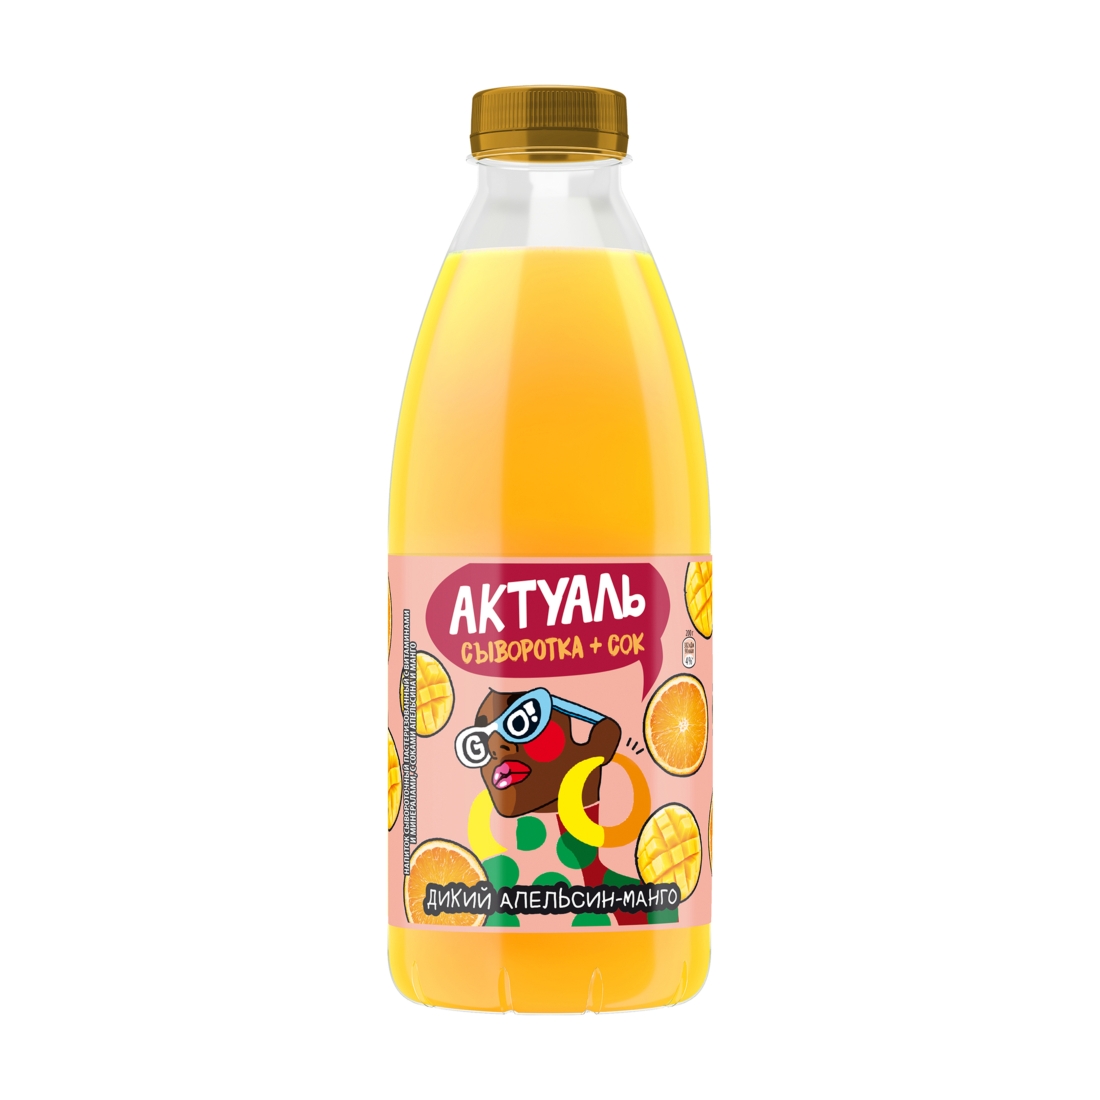 Сывороточный напиток Актуаль с апельсином и манго 930 мл